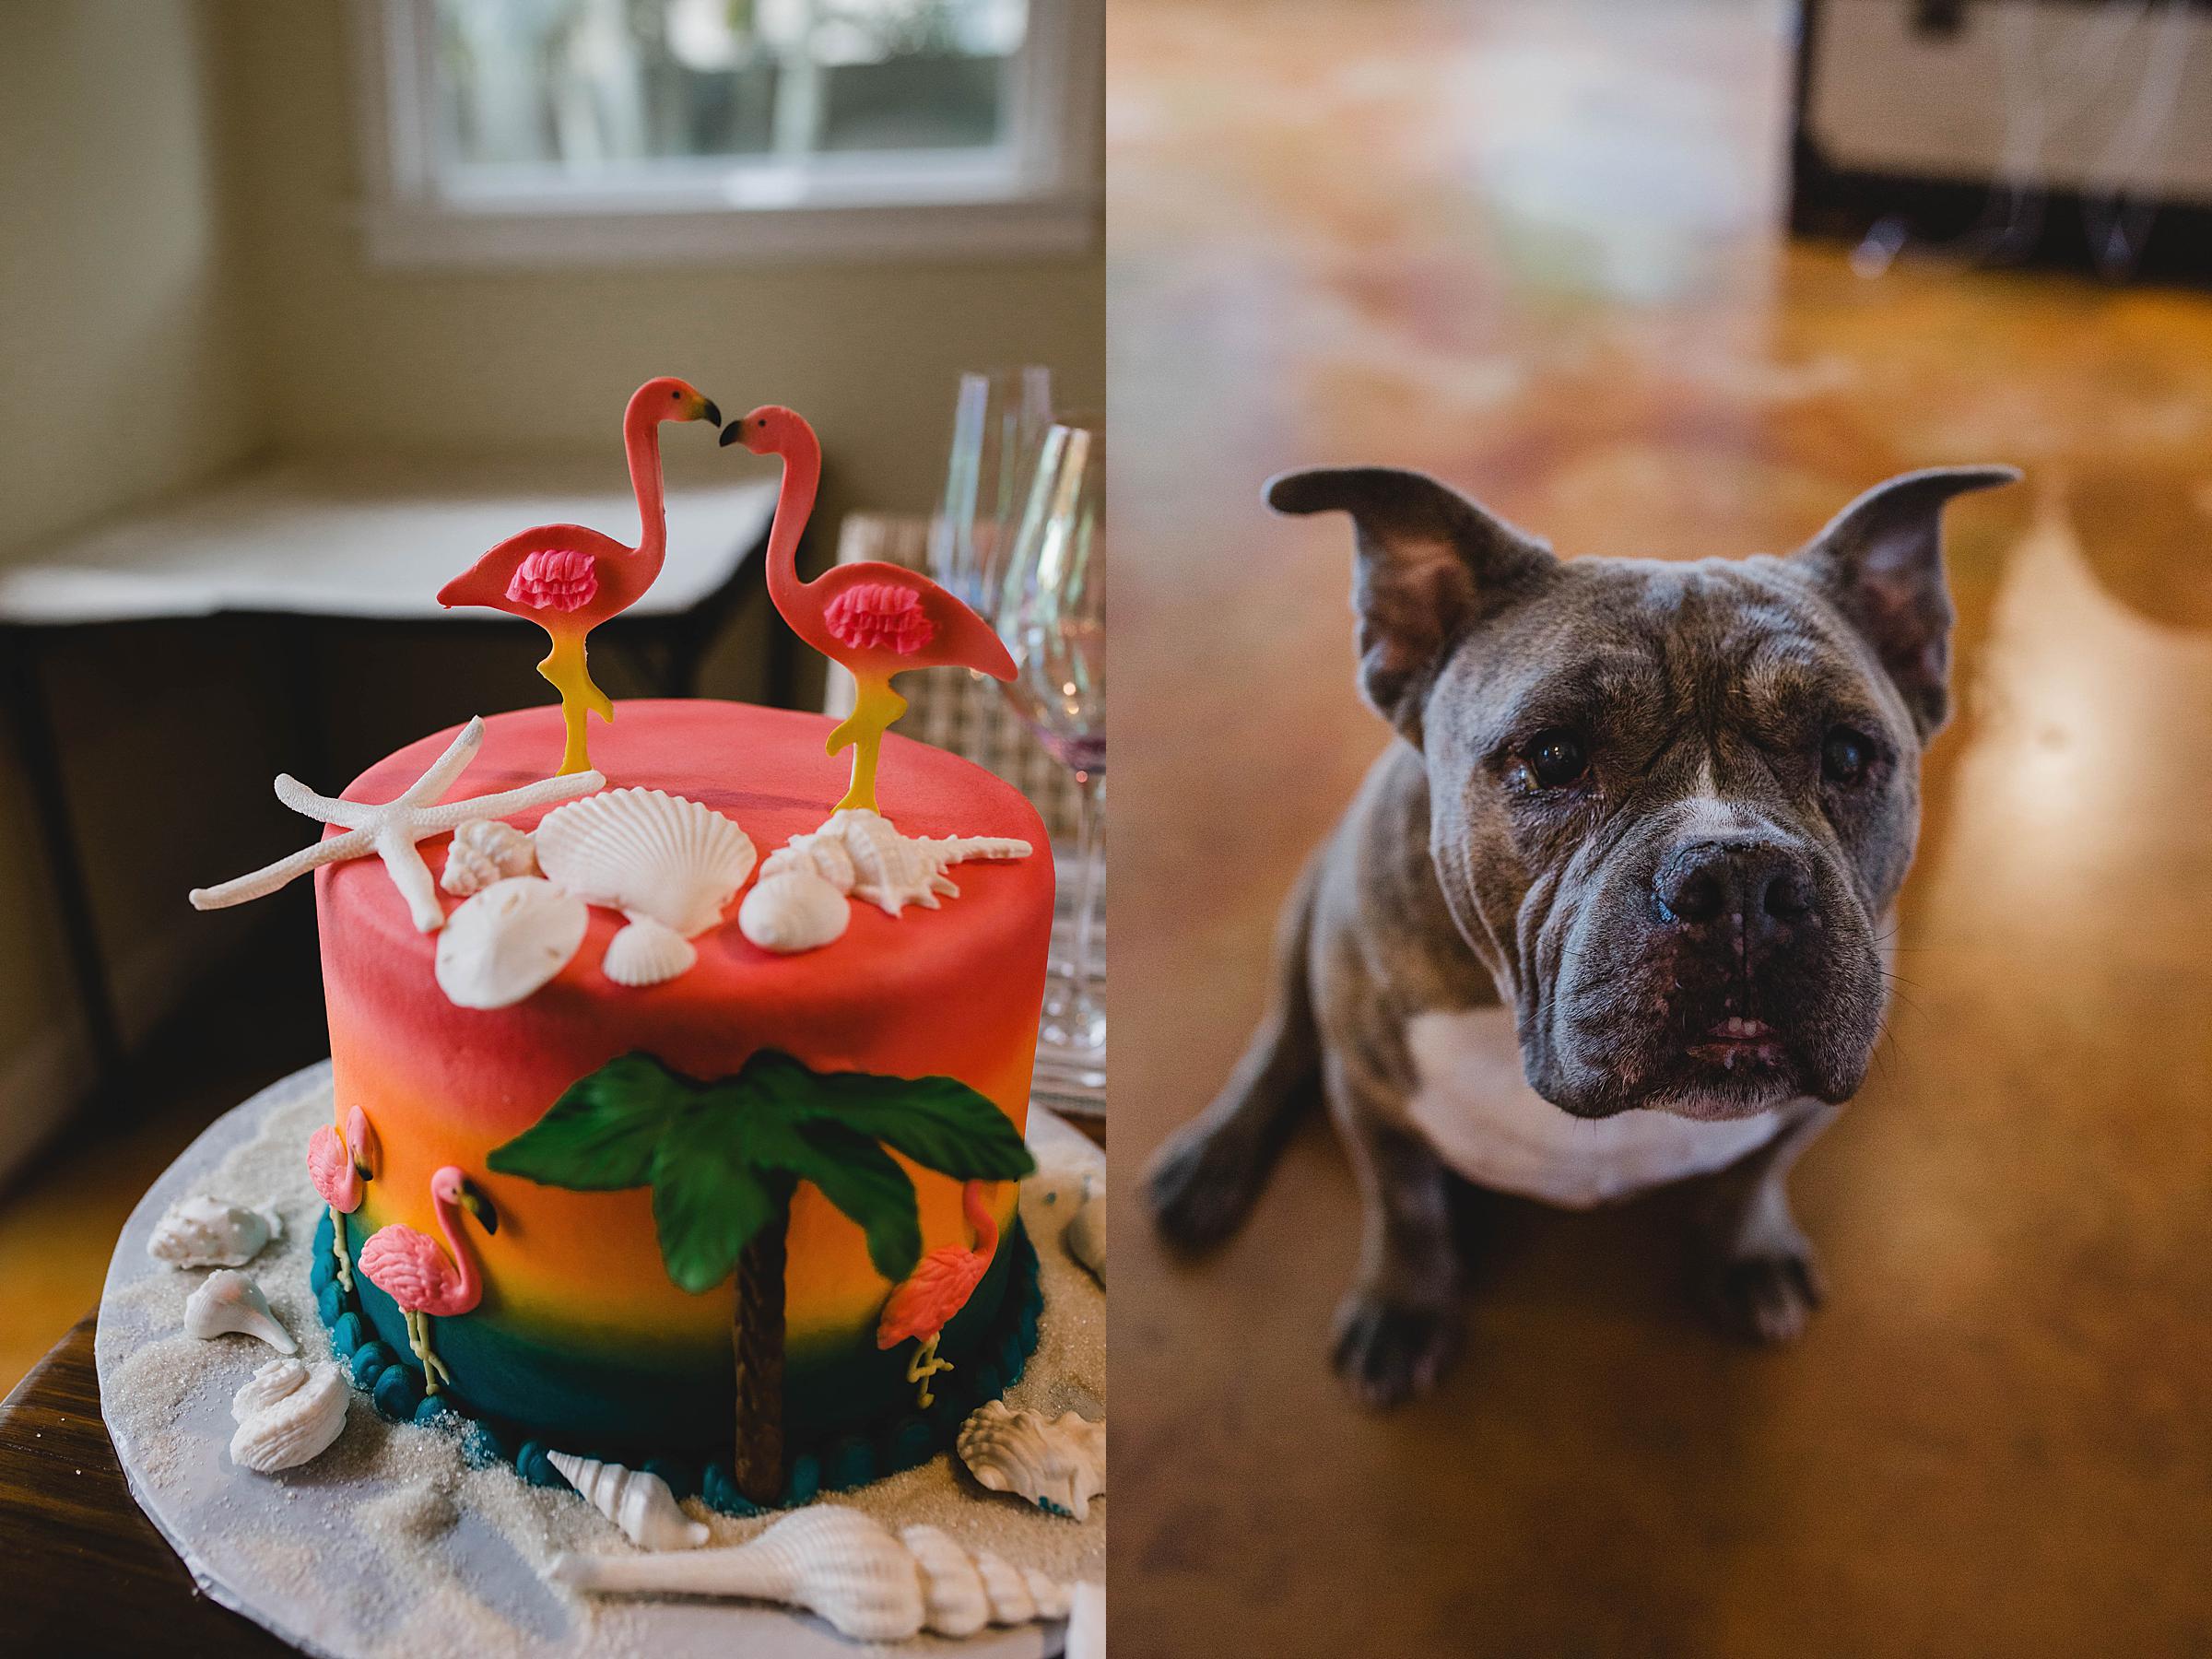 wedding cake and pet dog at sarasota courthouse wedding